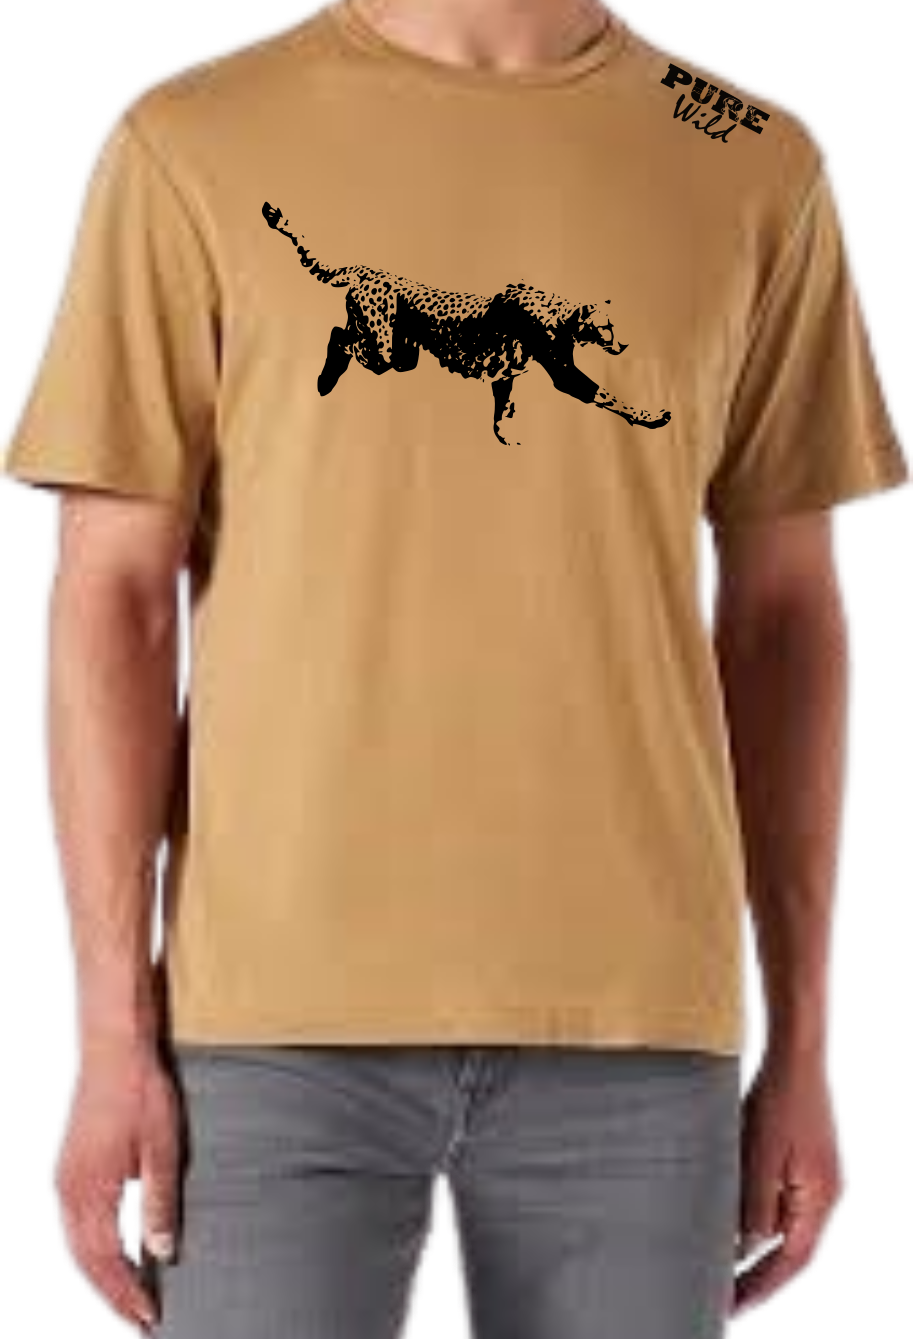 Cheetah T-Shirt For A Real Man